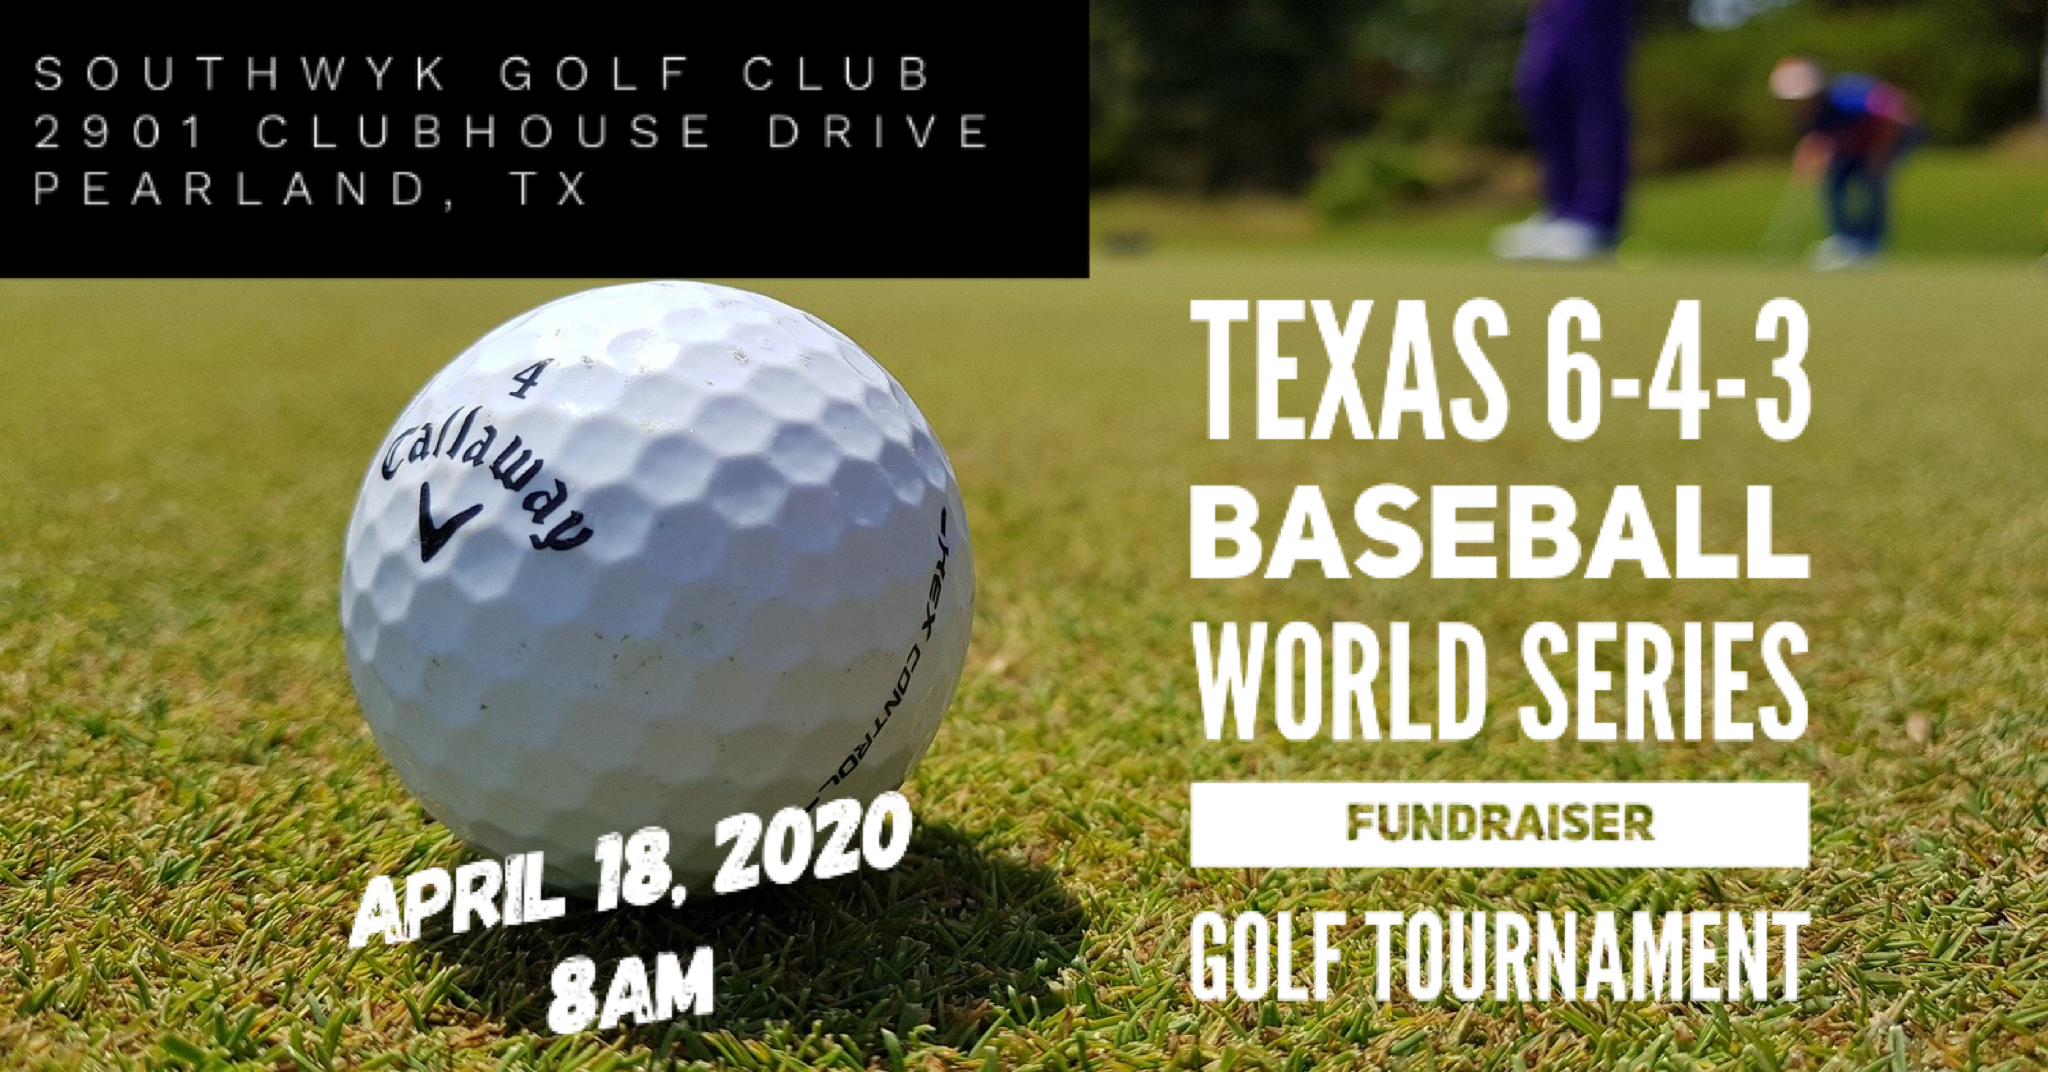 Texas 6-4-3 Baseball World Series Fundraiser Golf Tournament